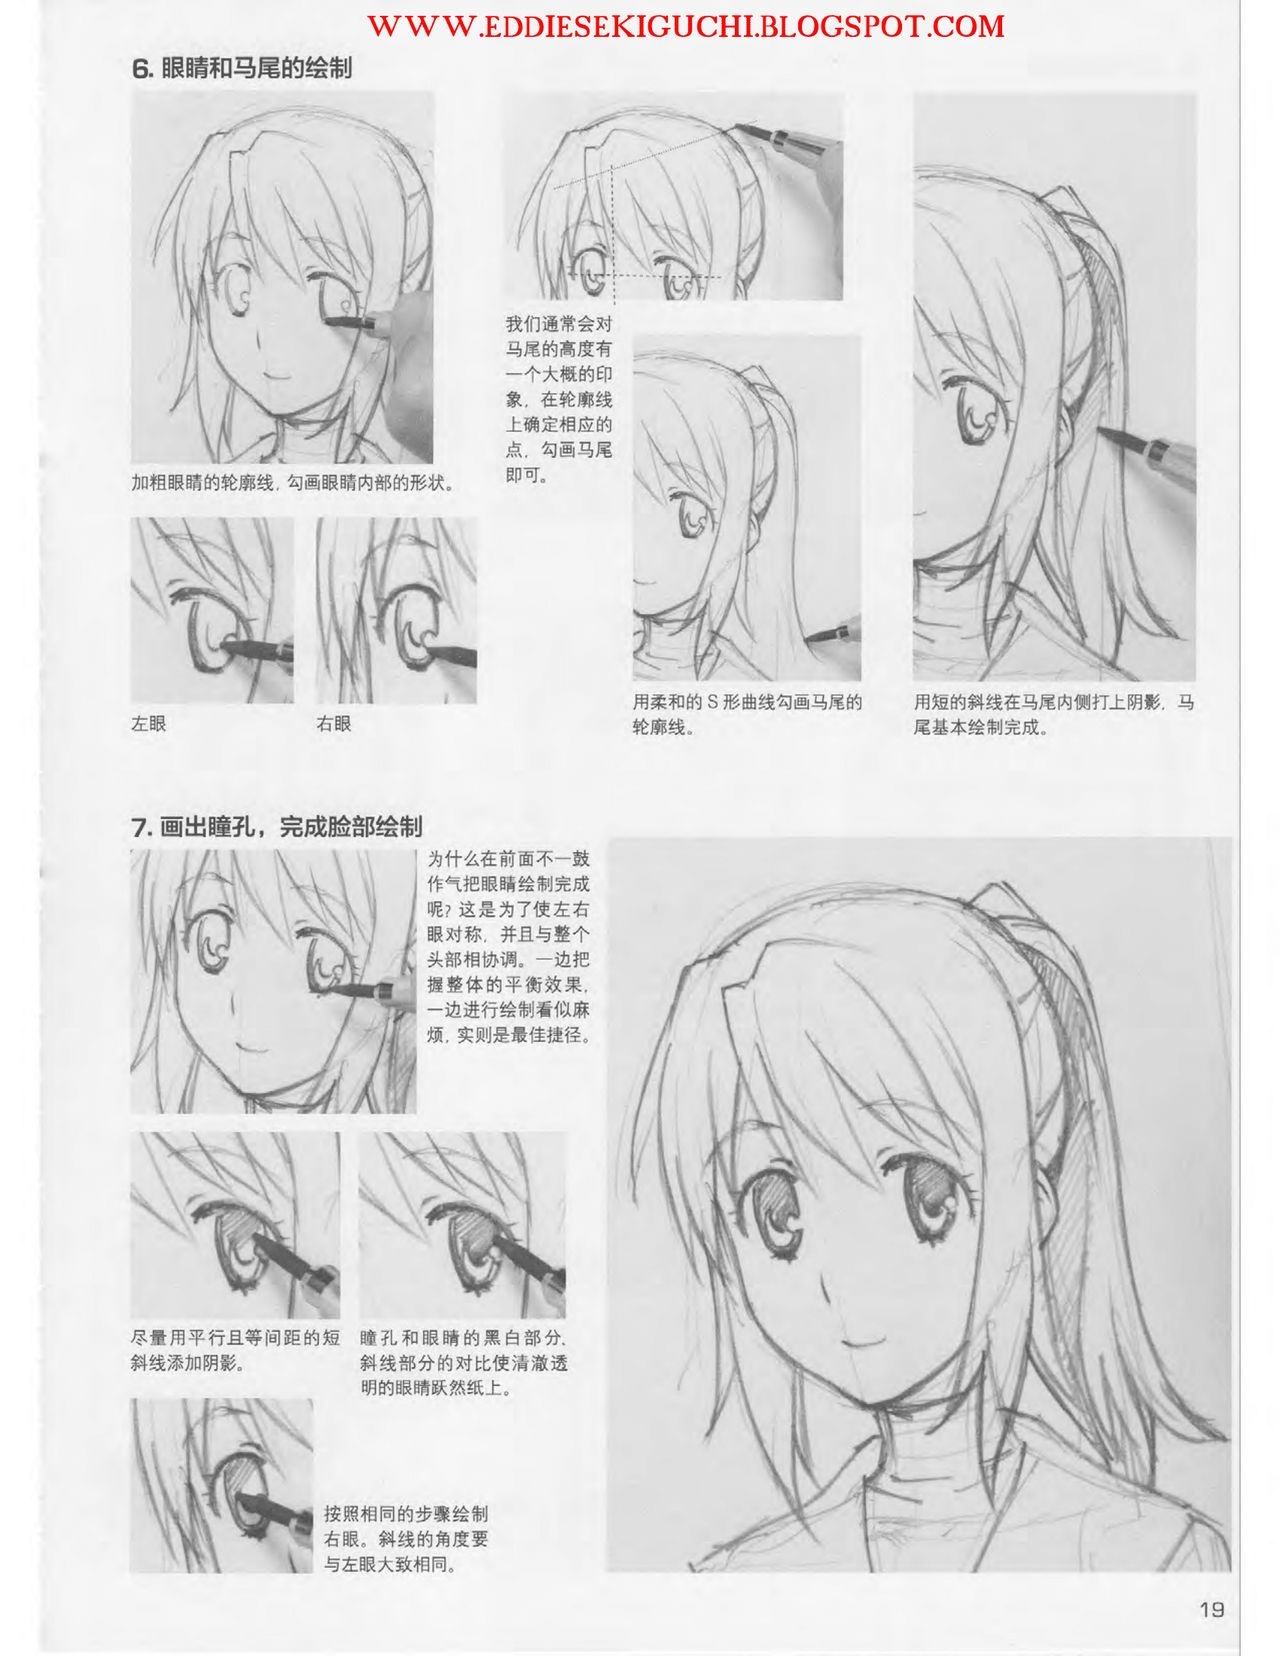 Japanese Manga Master Lecture 3: Lin Akira and Kakumaru Maru Talk About Glamorous Character Modeling 19